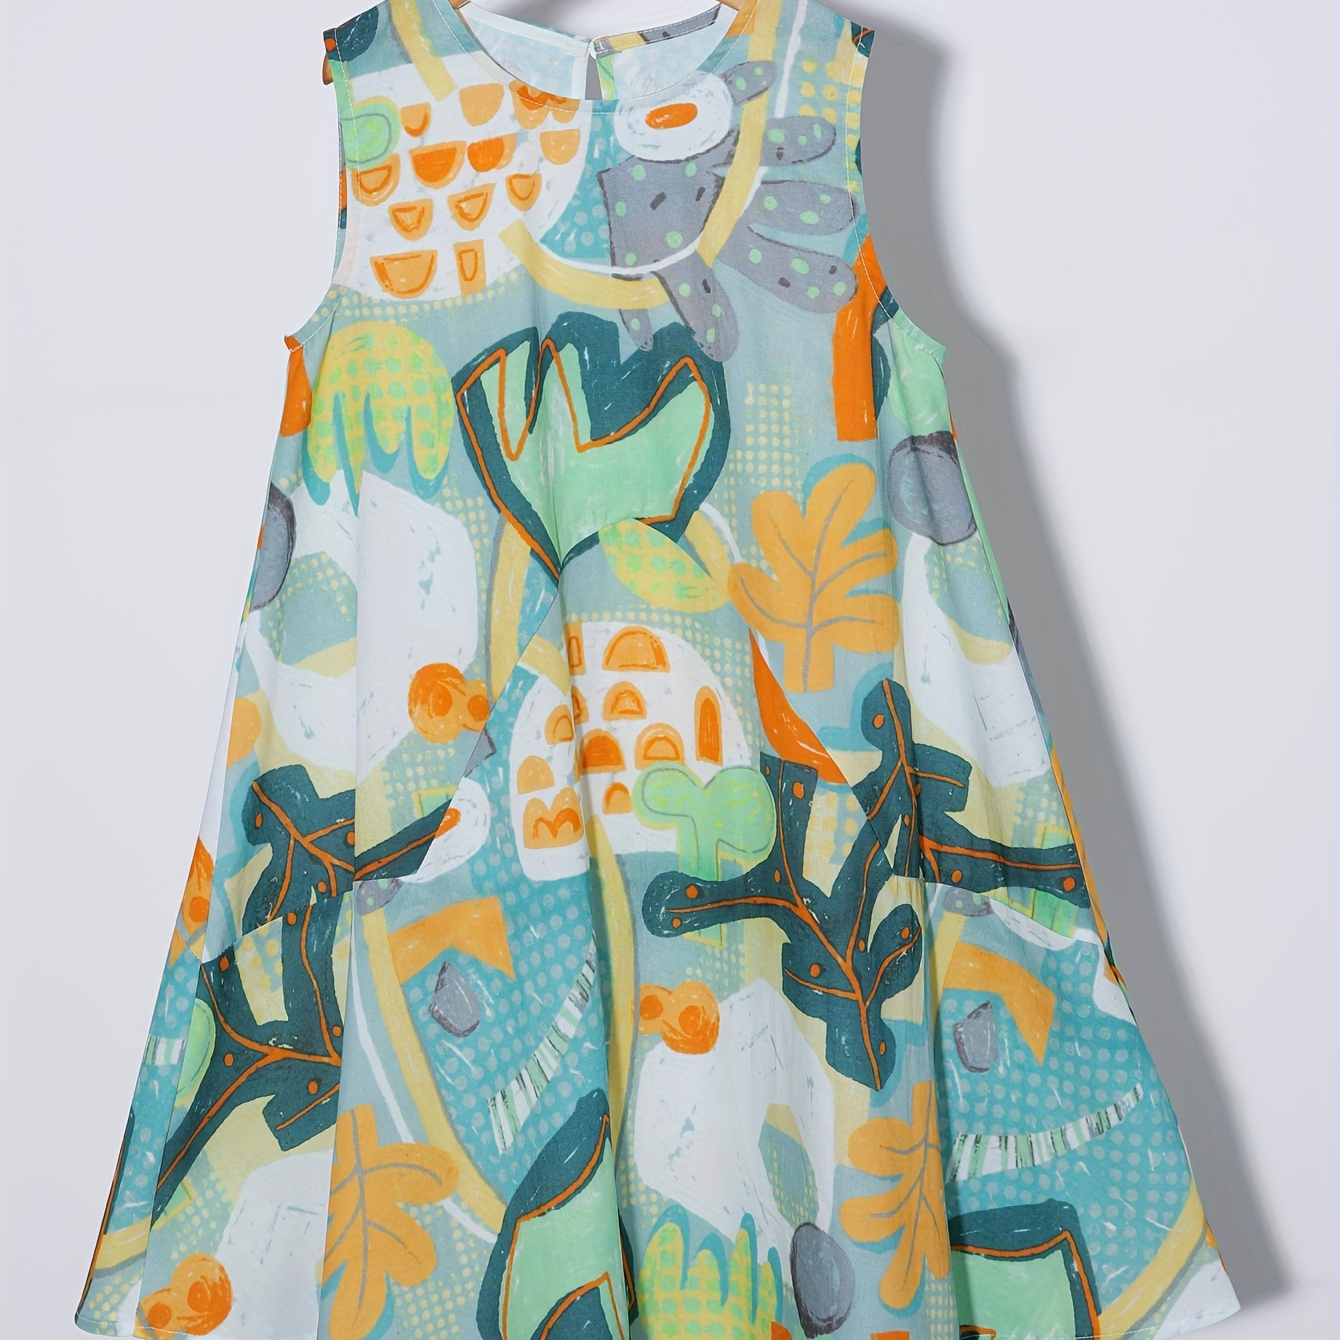 

Cartoon Graffiti Print Girl's Sundress, A-line Sleeveless Swing Dress For Summer Outdoor Vacation